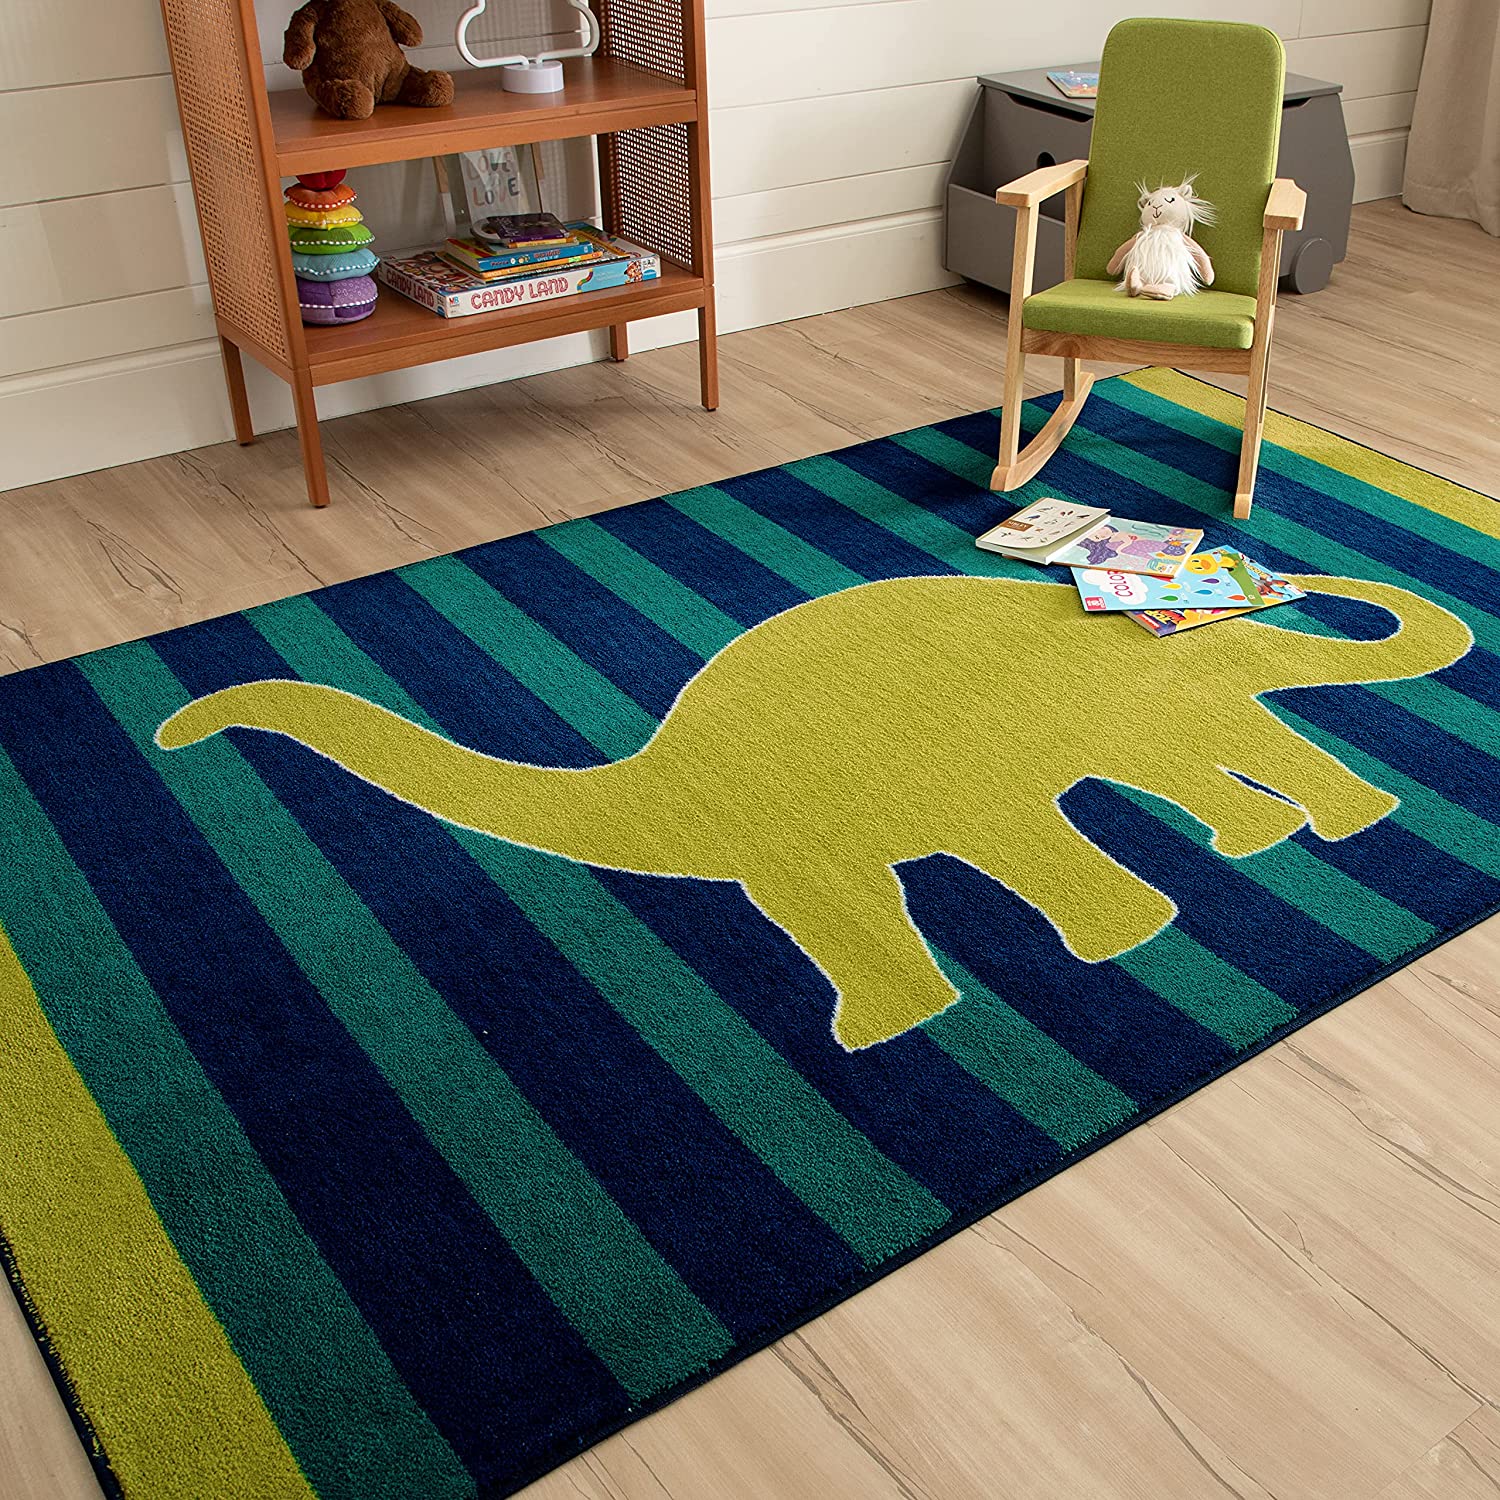 dinosaur-themed-bedroom-ideas-rugs